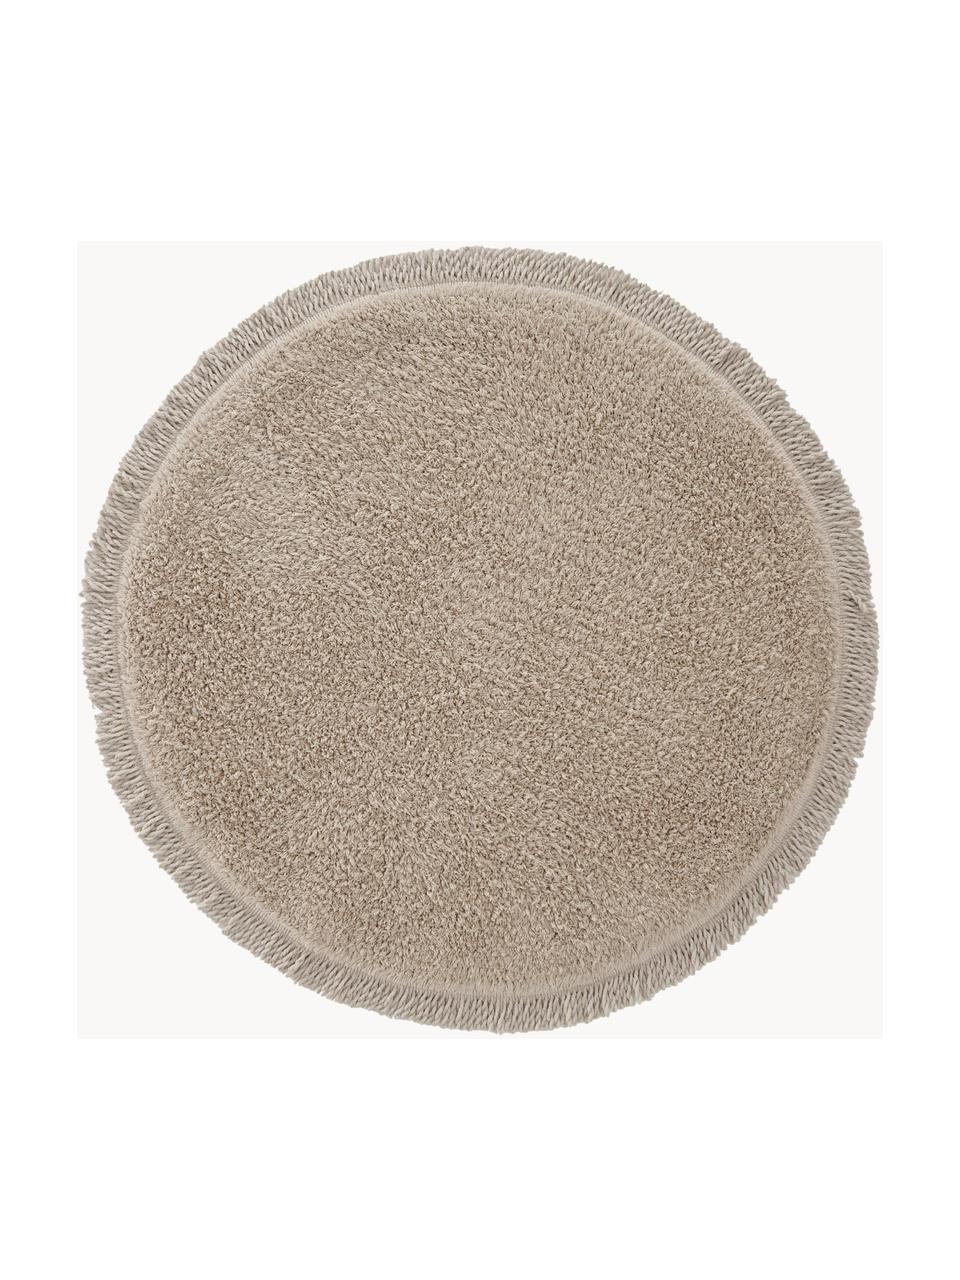 Tappeto bagno rotondo in cotone Loose, 100% cotone, Beige, Ø 70 cm